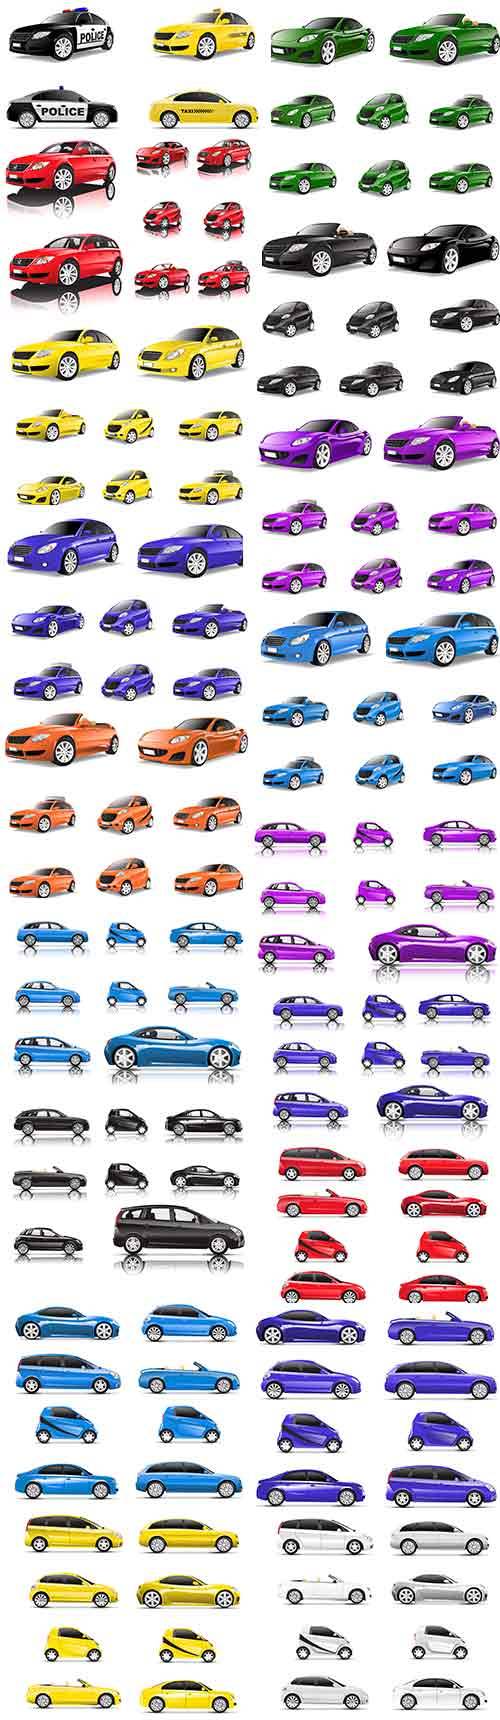 Автомобили в векторе / Cars in vector